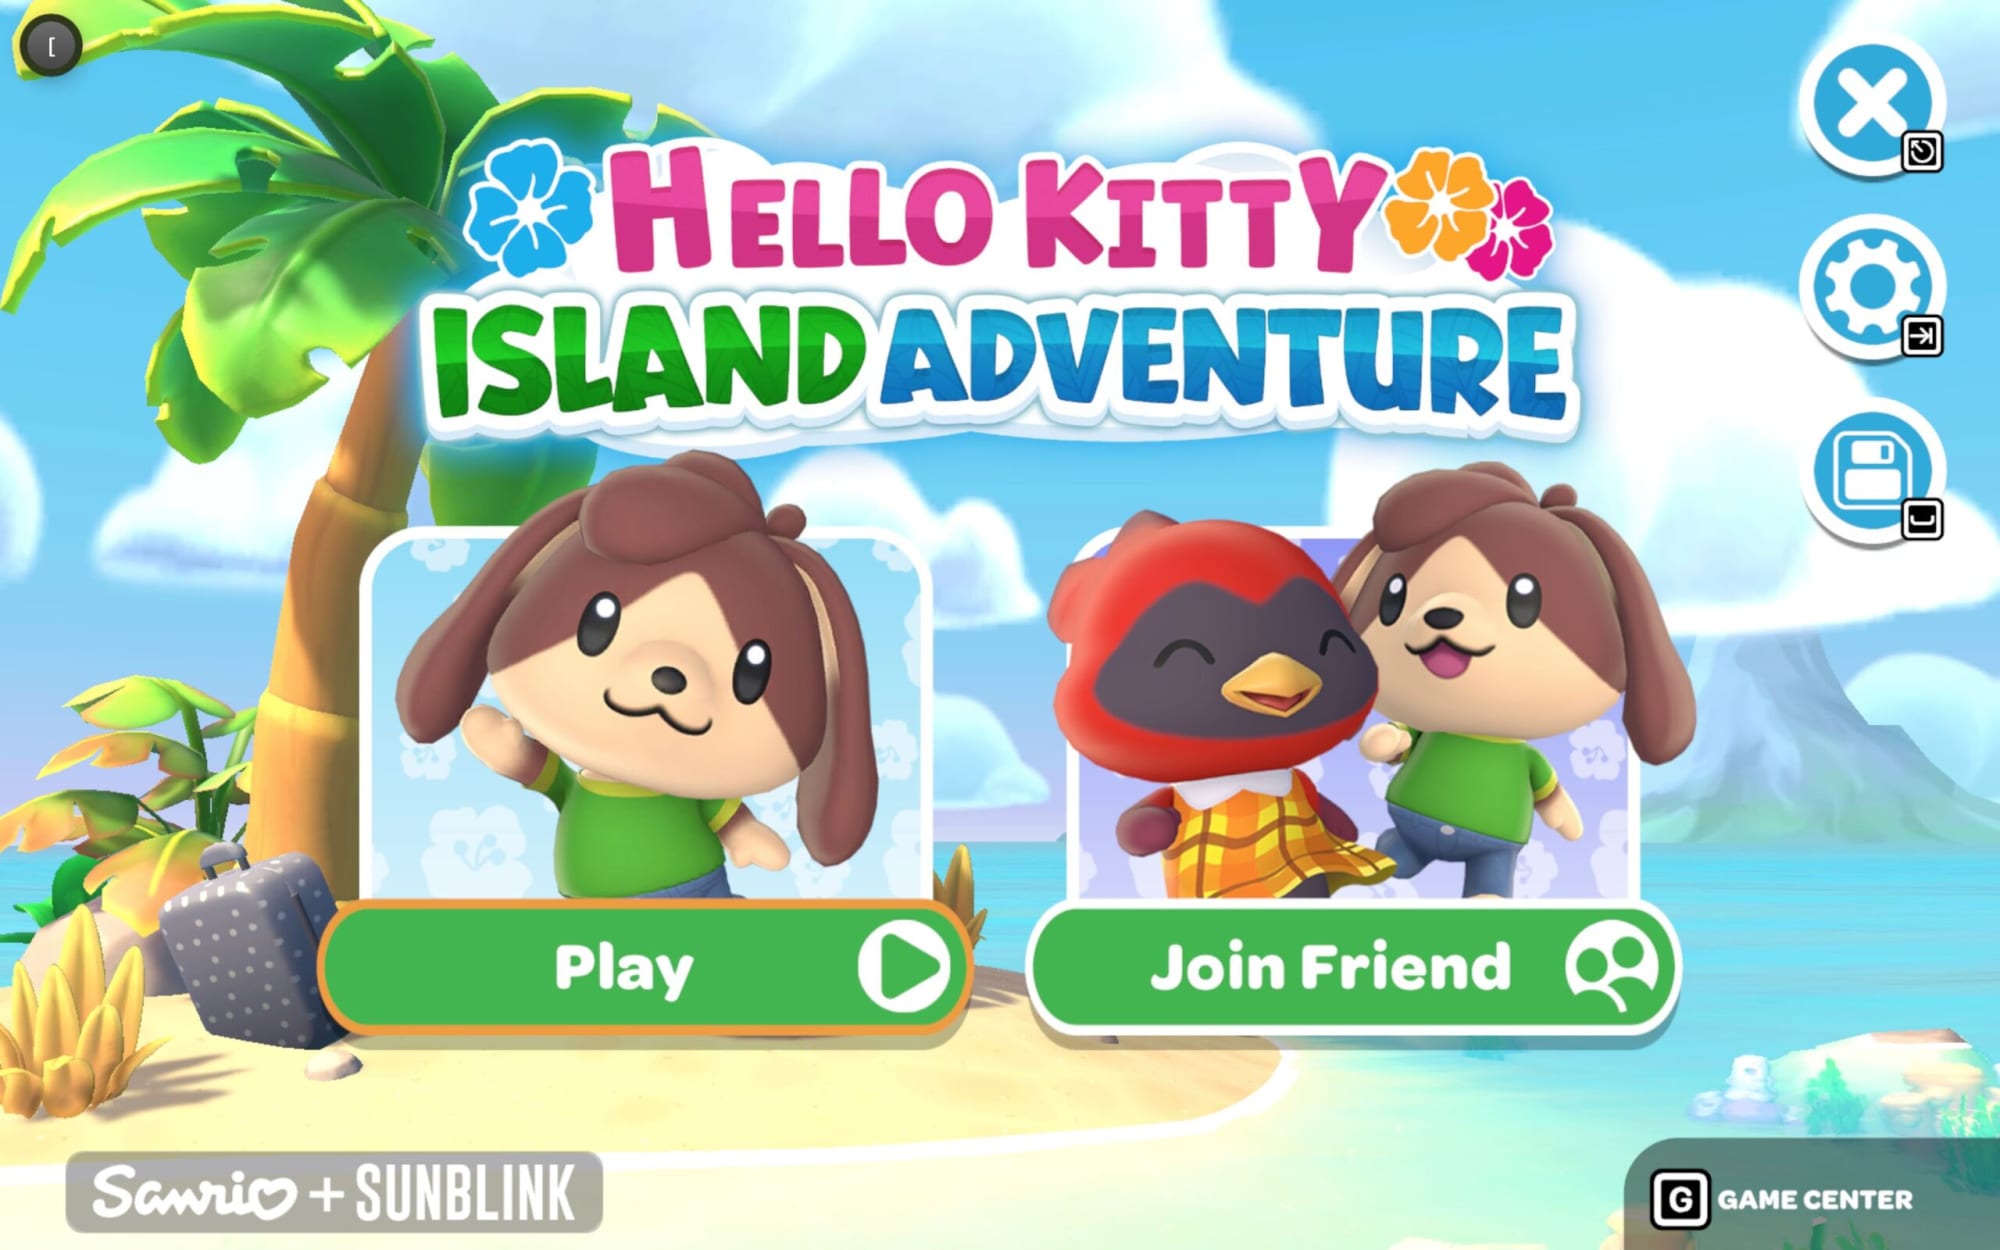 Hello Kitty: 🌺 NEW: Hello Kitty Island Adventure 🌺